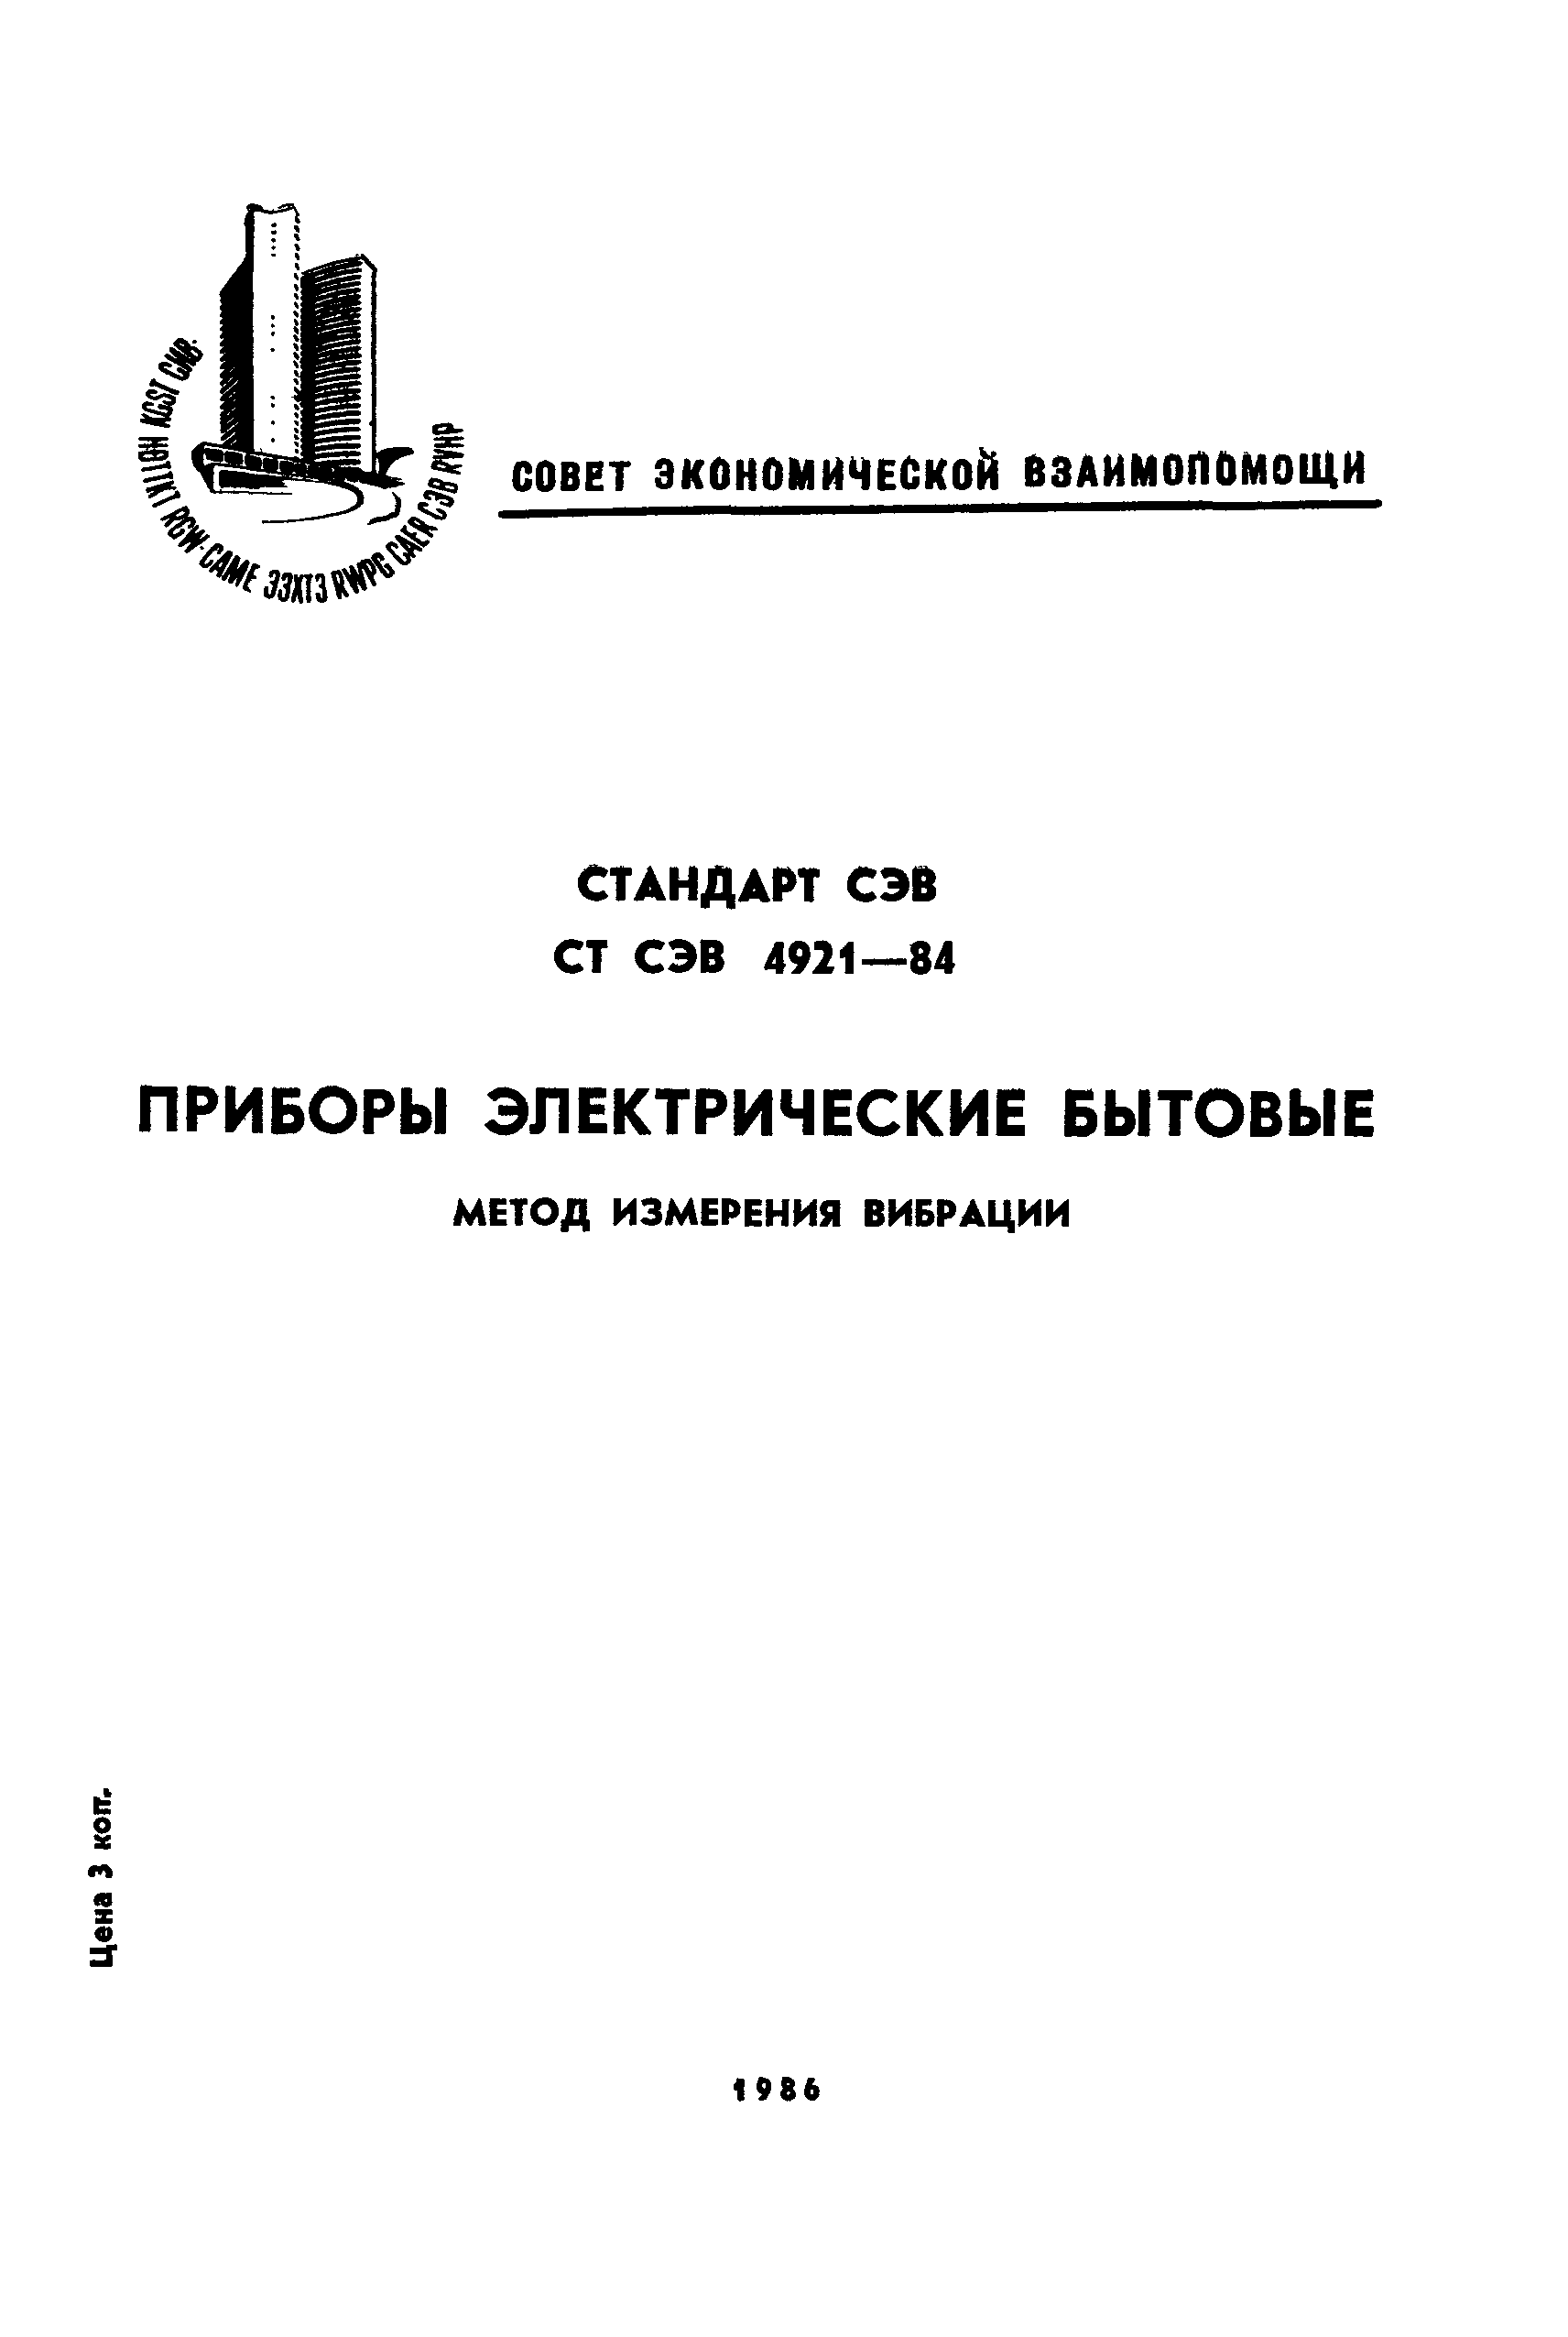 СТ СЭВ 4921-84